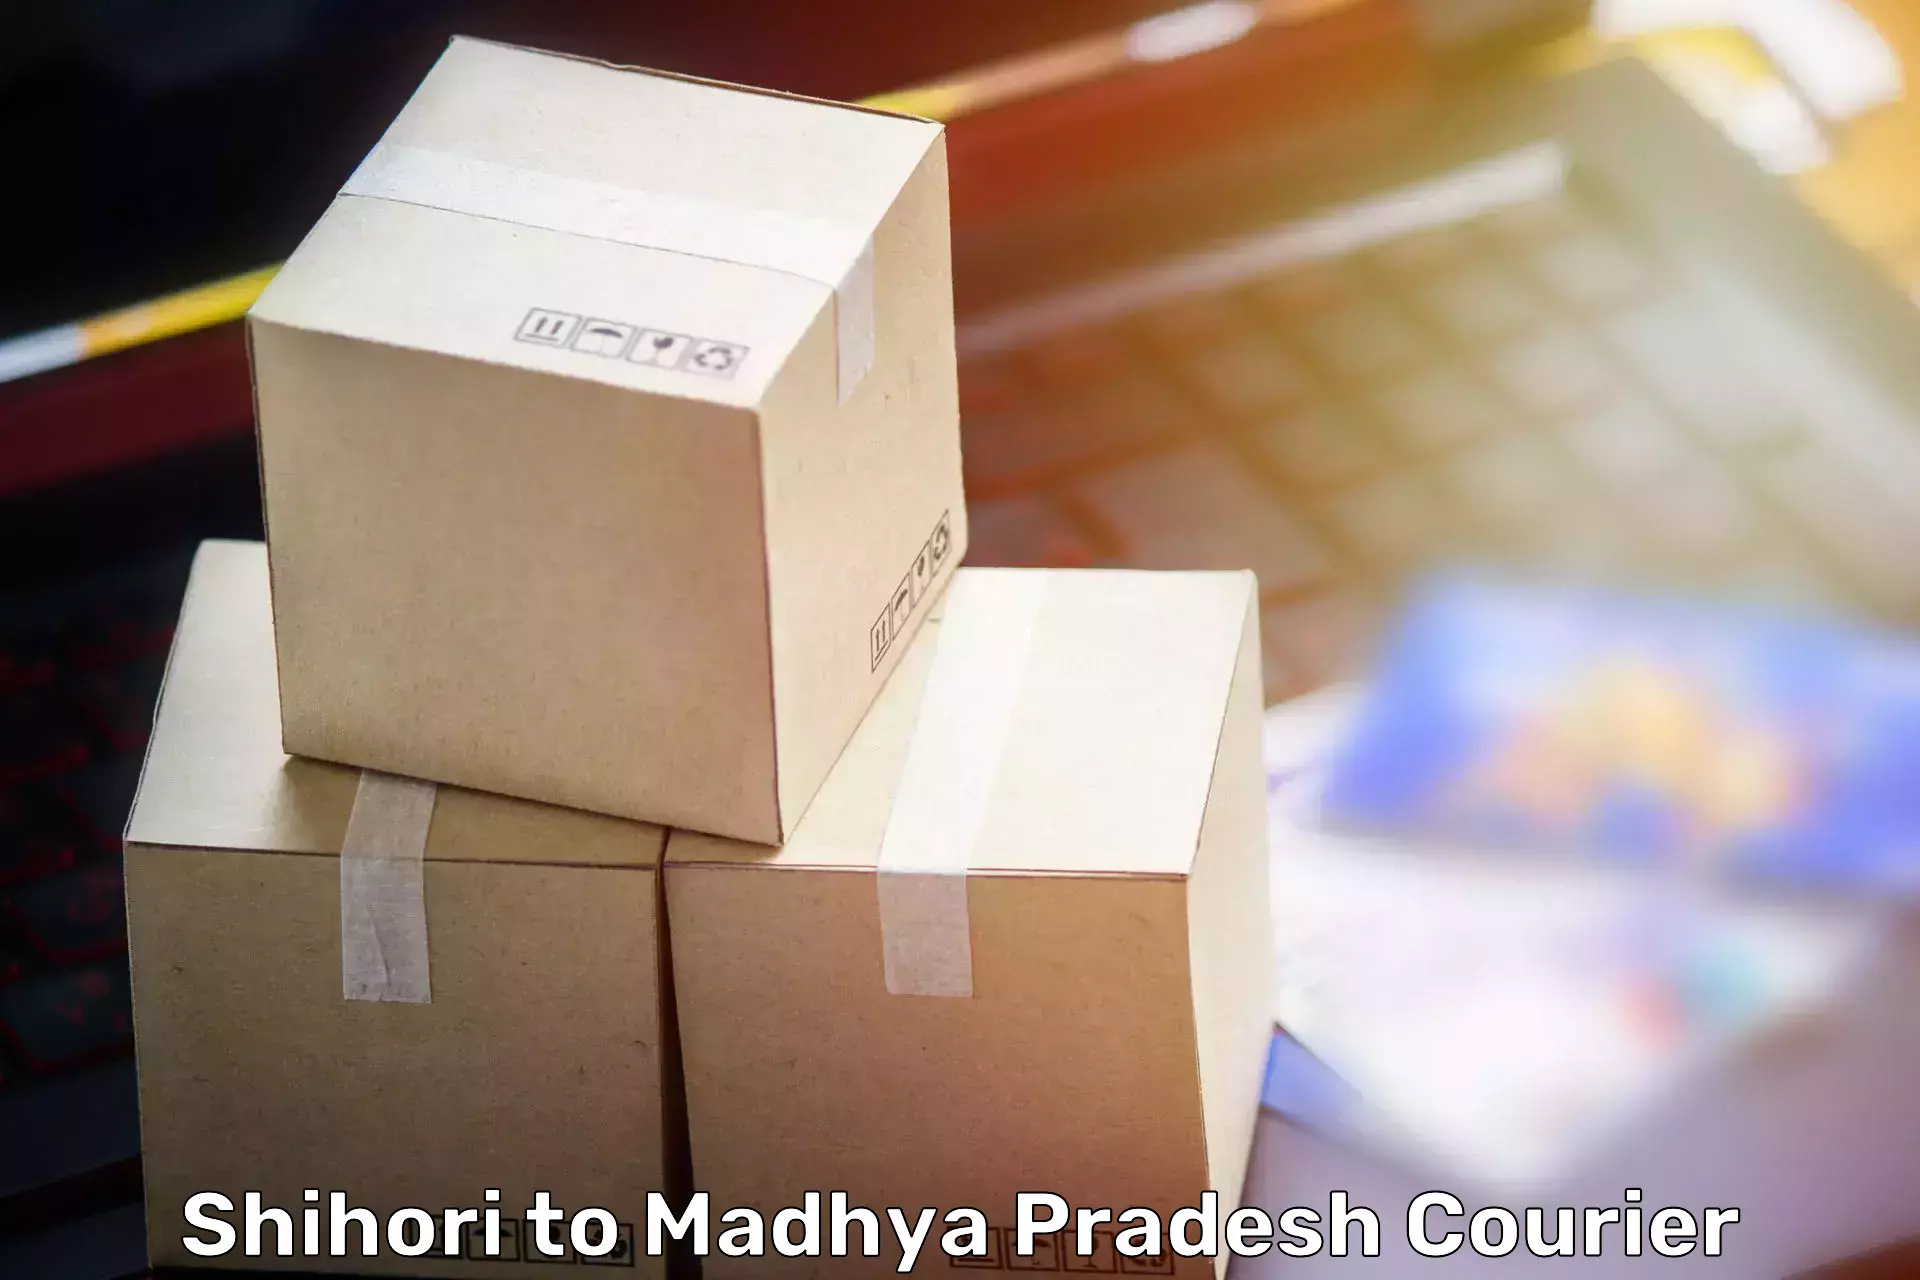 Home relocation experts Shihori to Madhya Pradesh